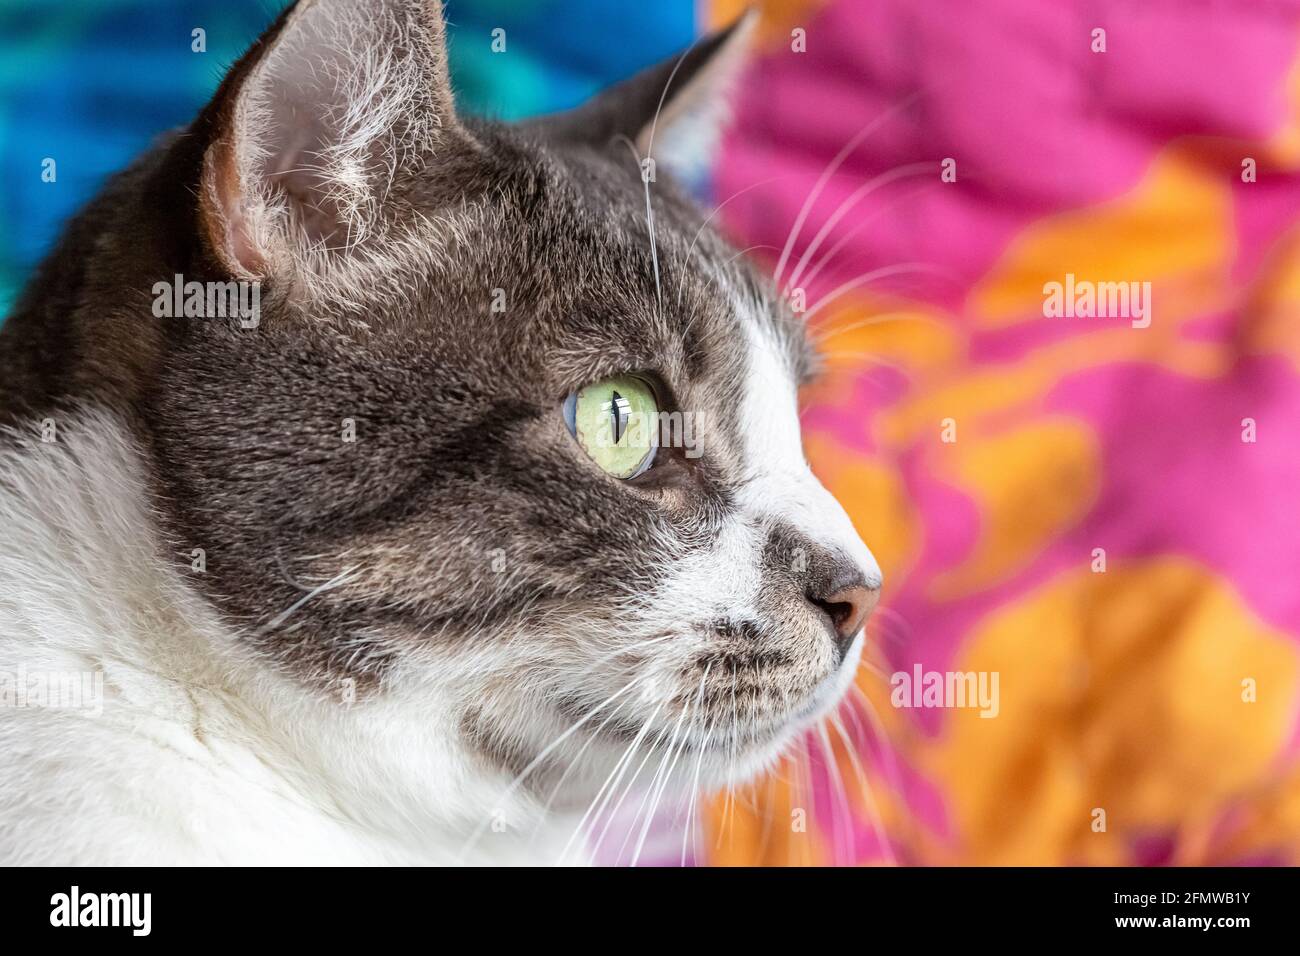 Profil d'un chat de tabby gris et blanc à rayures Shorthair domestique. Banque D'Images